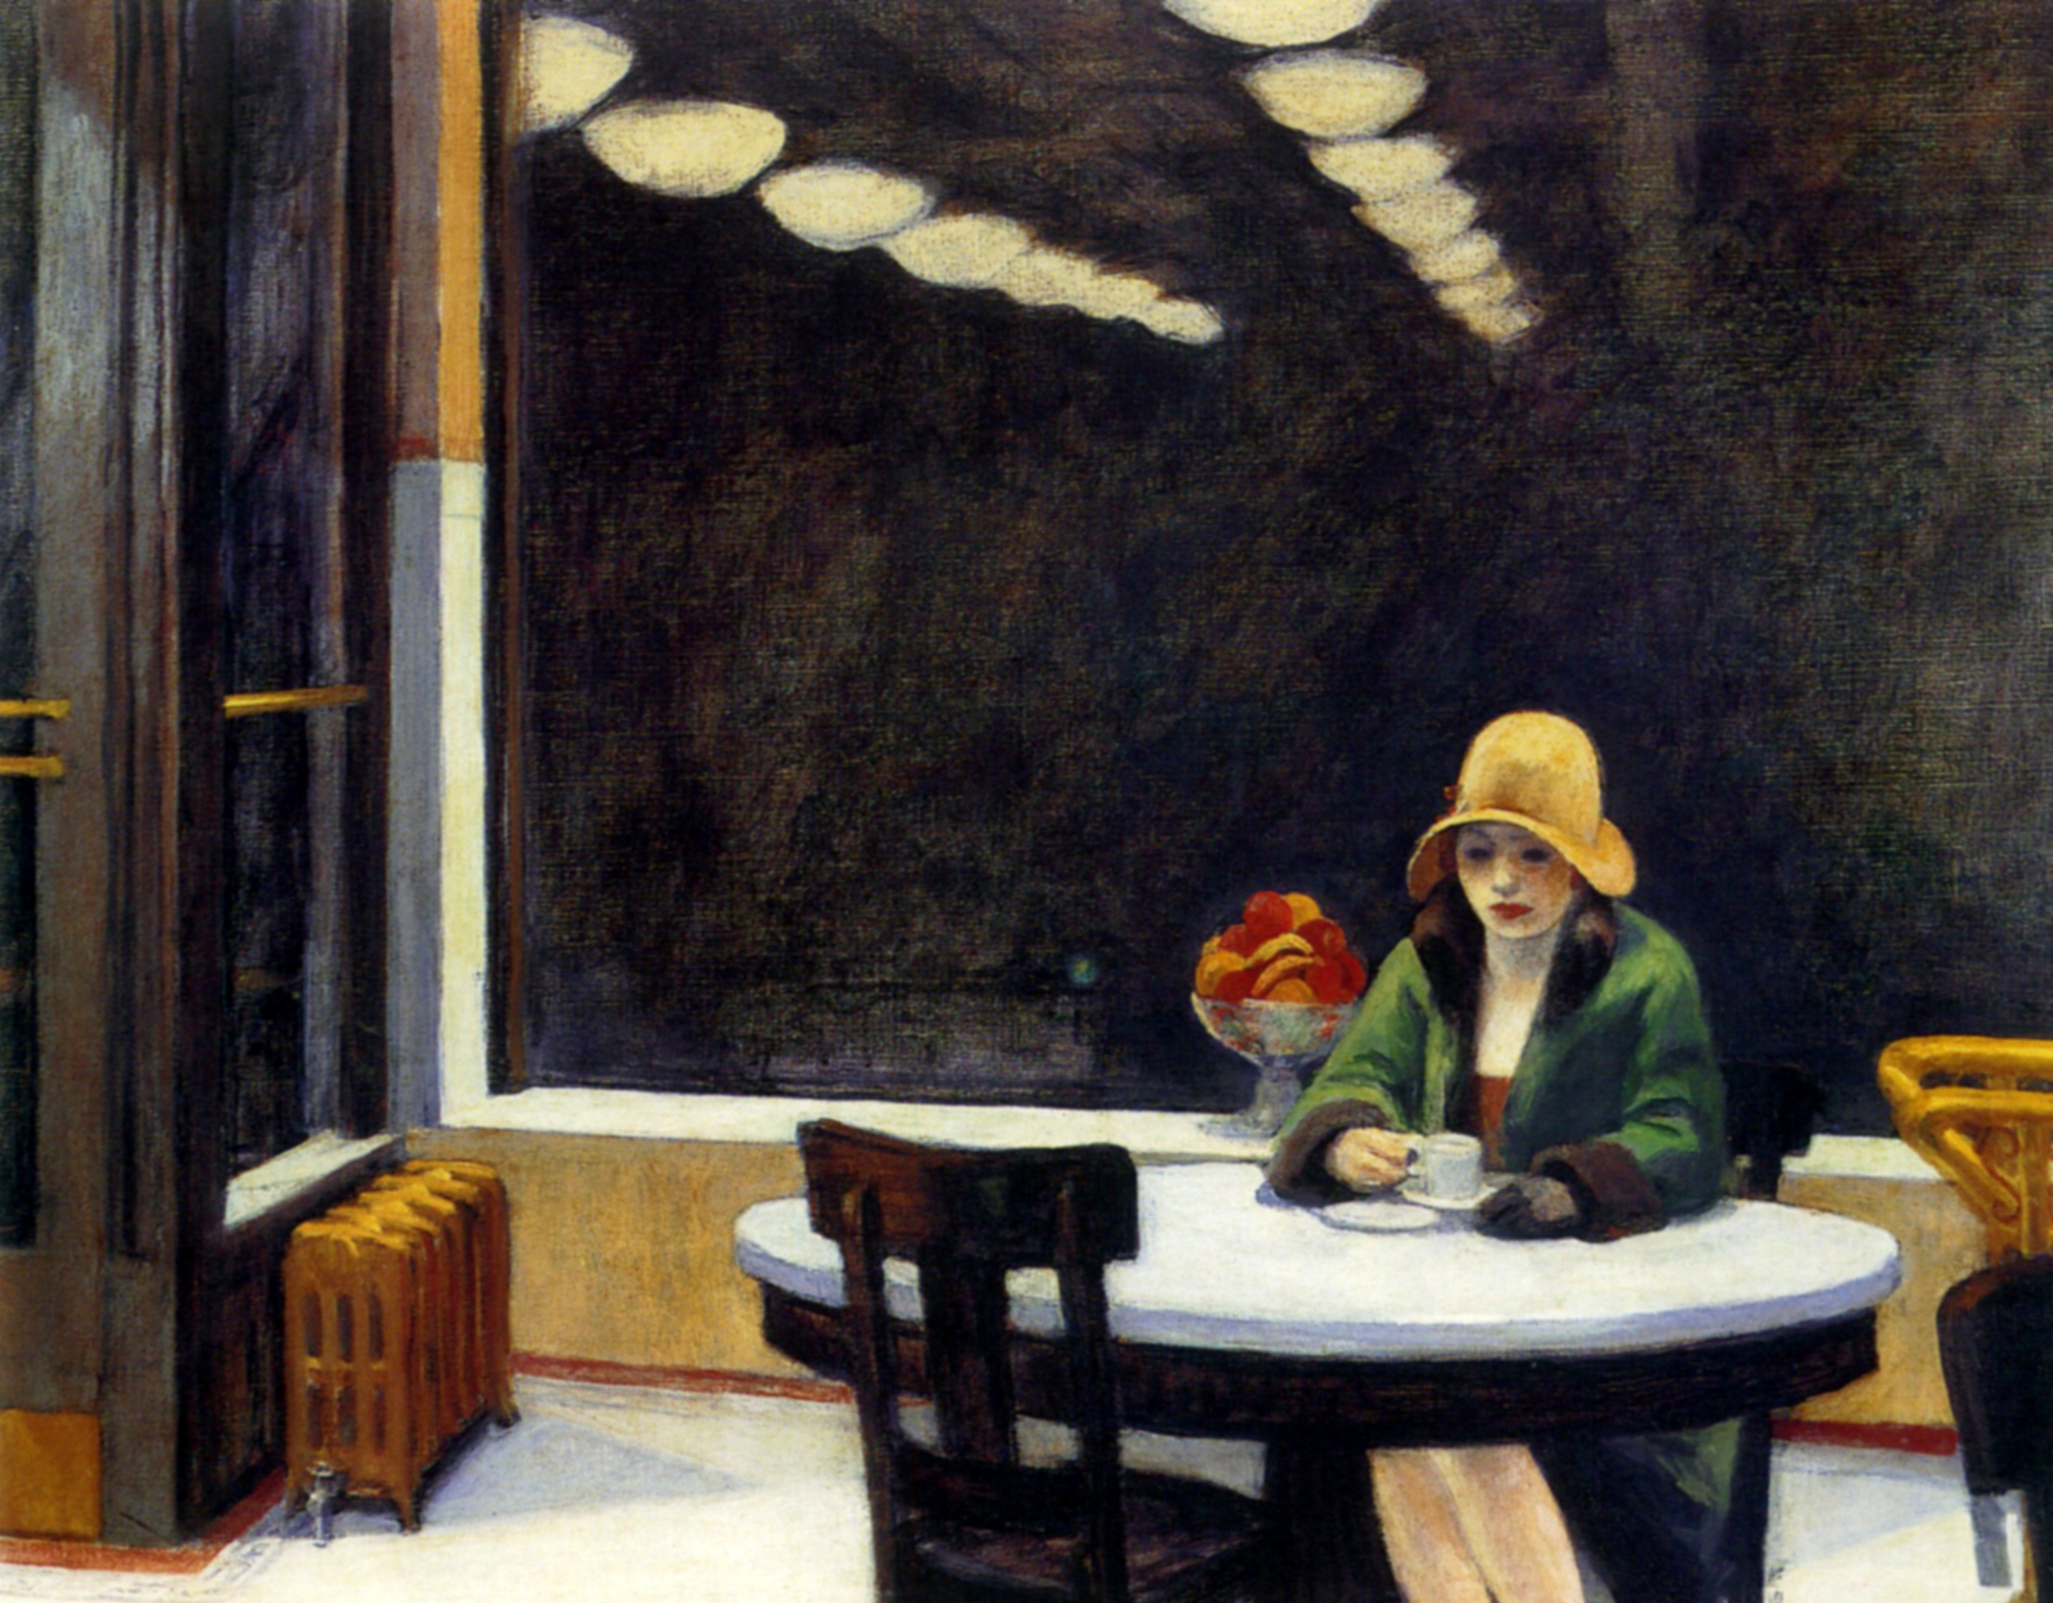 Edward Hopper, Automat, 1927, oil on canvas, 71.4 × 91.4 cm, Des Moines Art Center, Des Moines